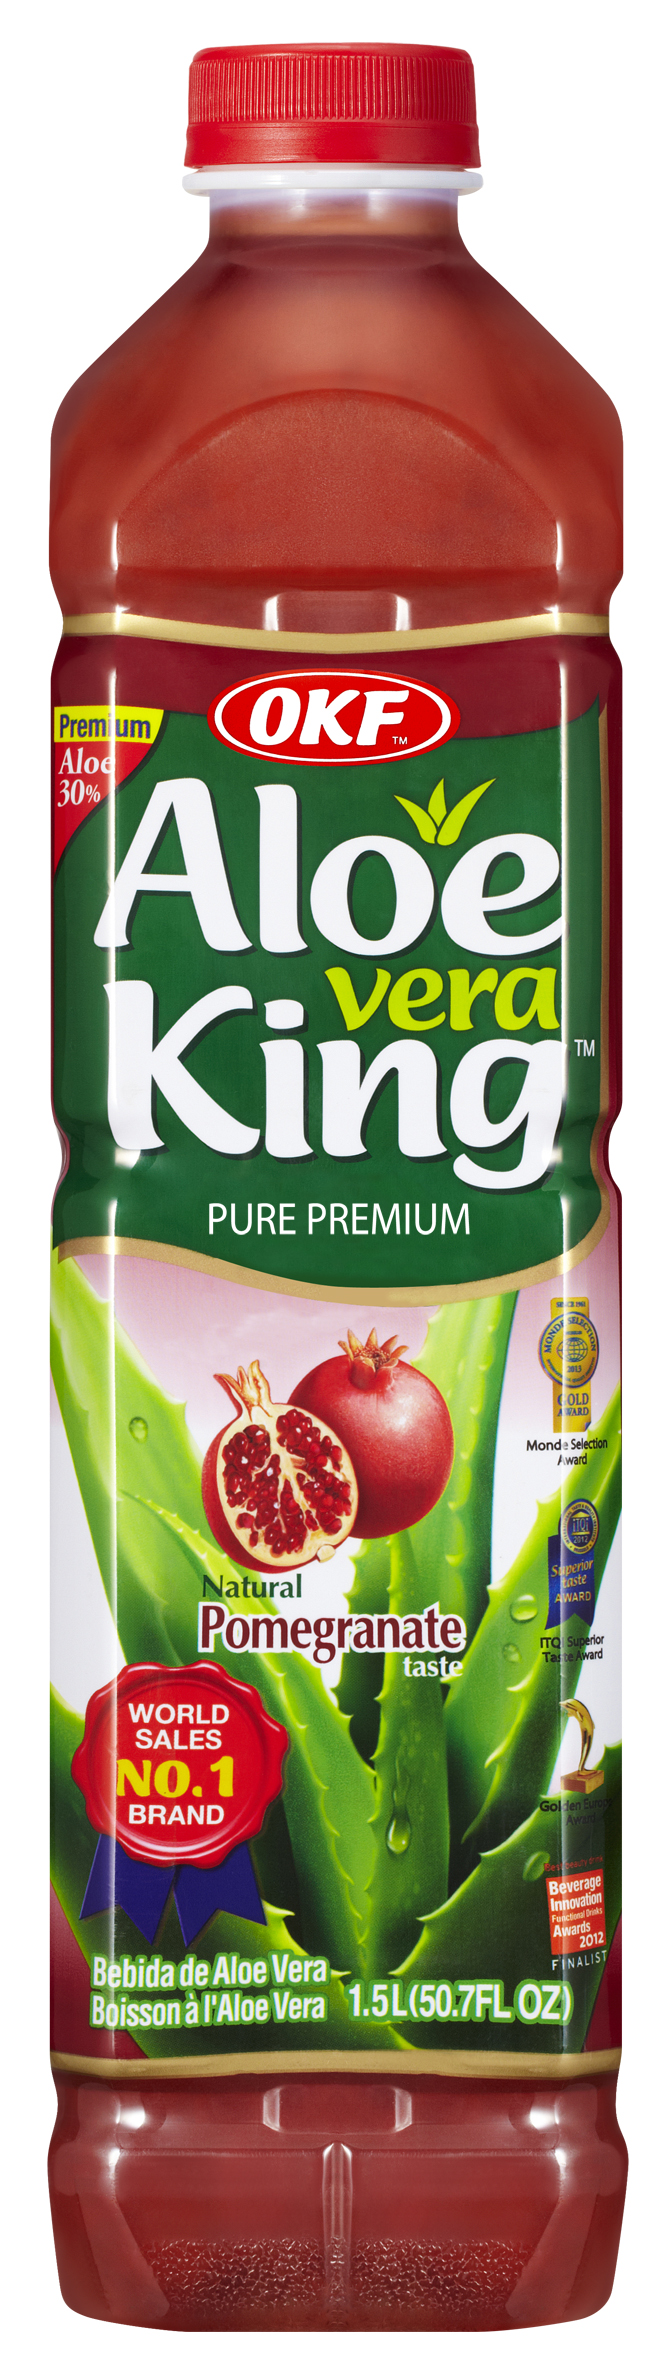 Avk040 Aloe King Pomegranate, 1.5 Liter - Case Of 12